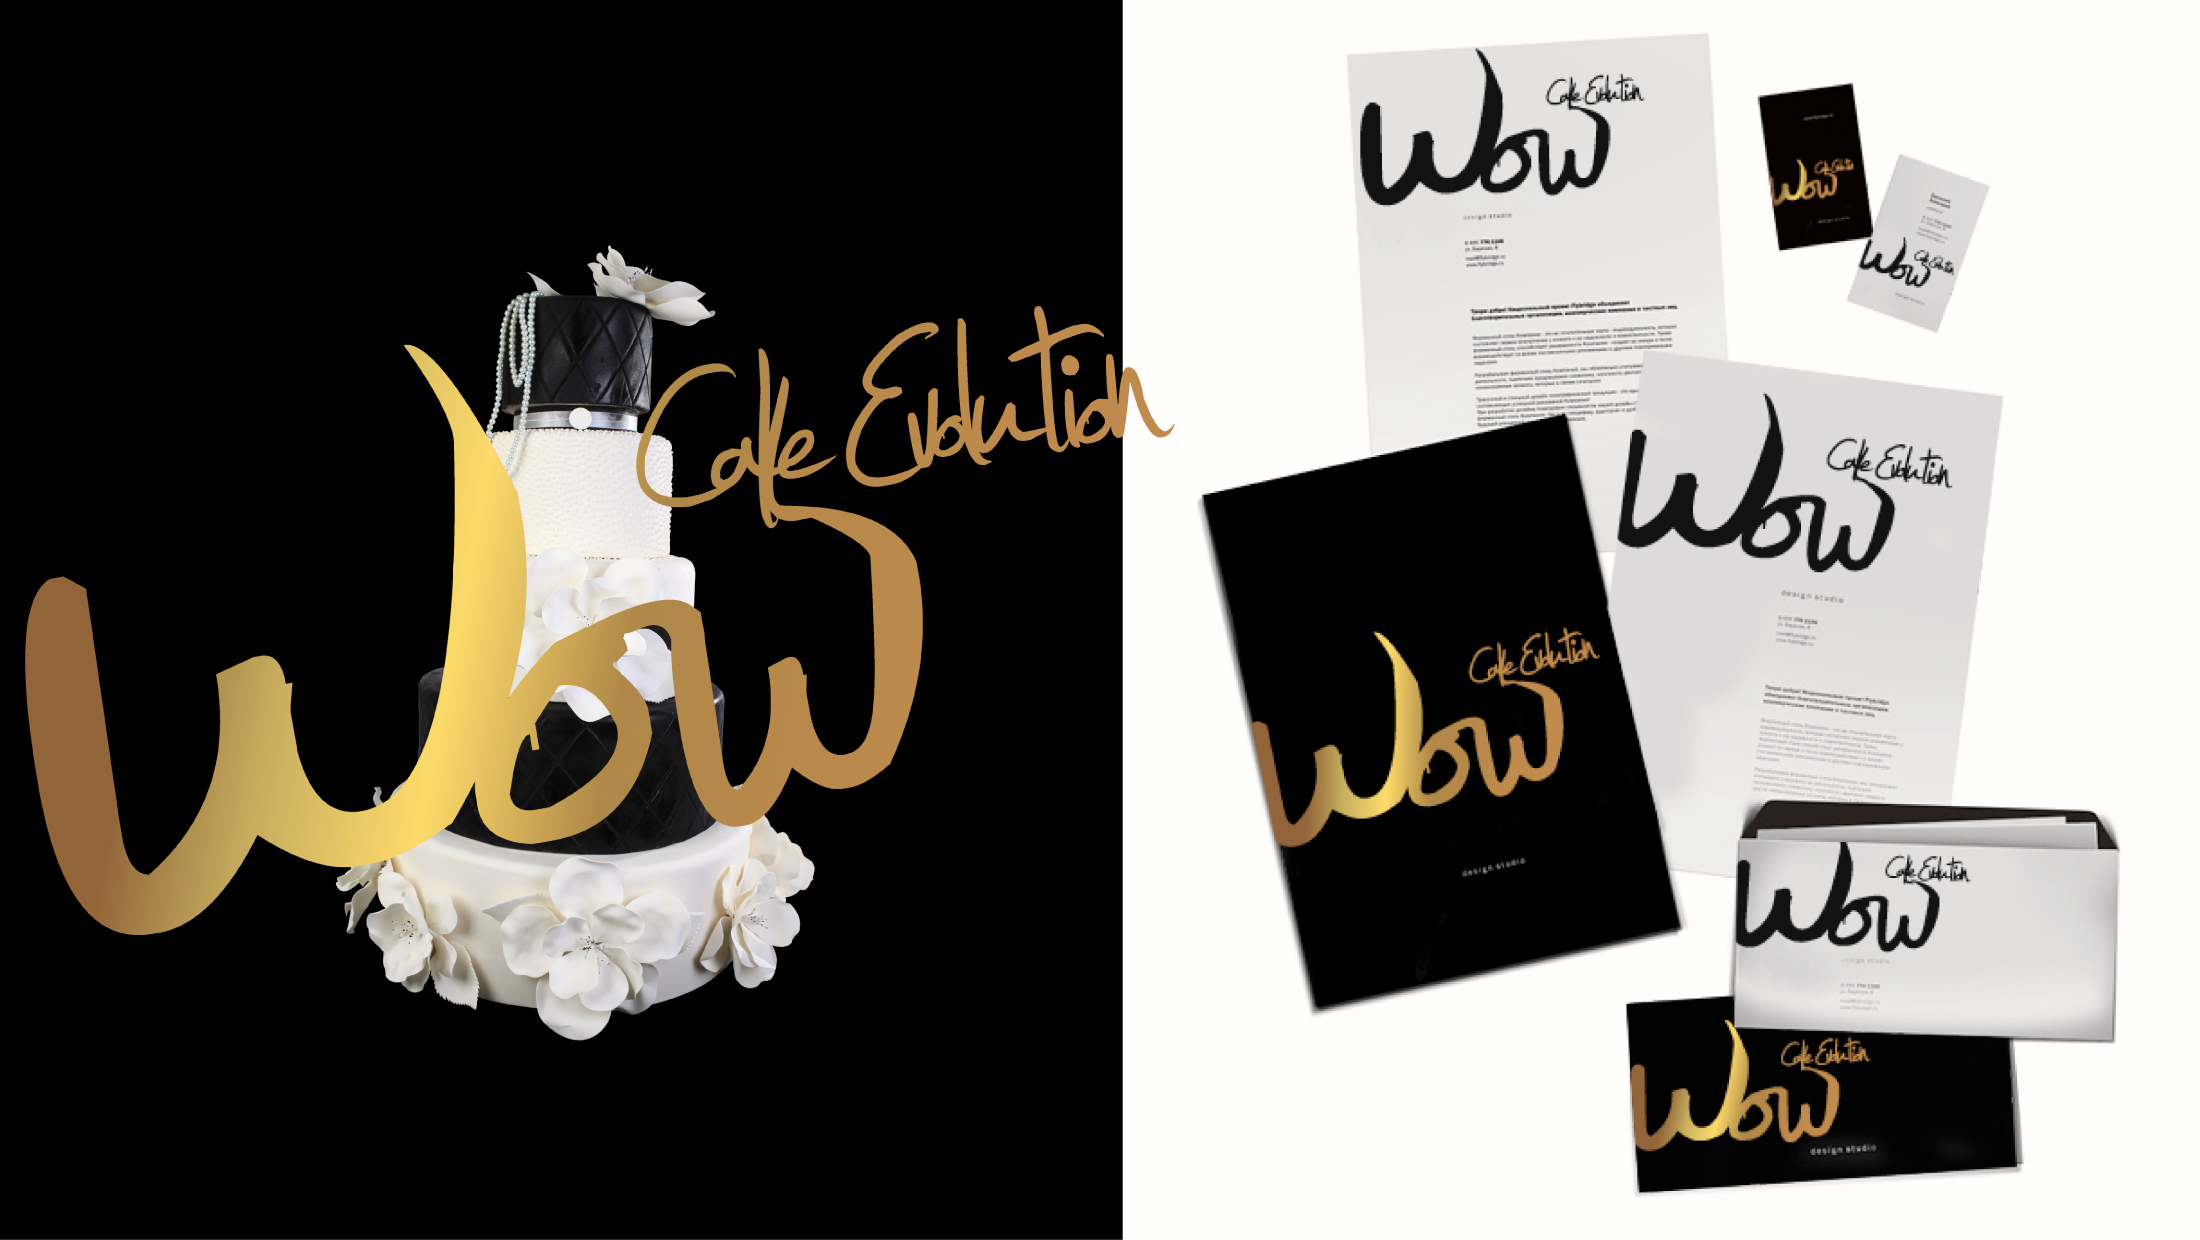 vocuis wow brand design–2200px 02 2011